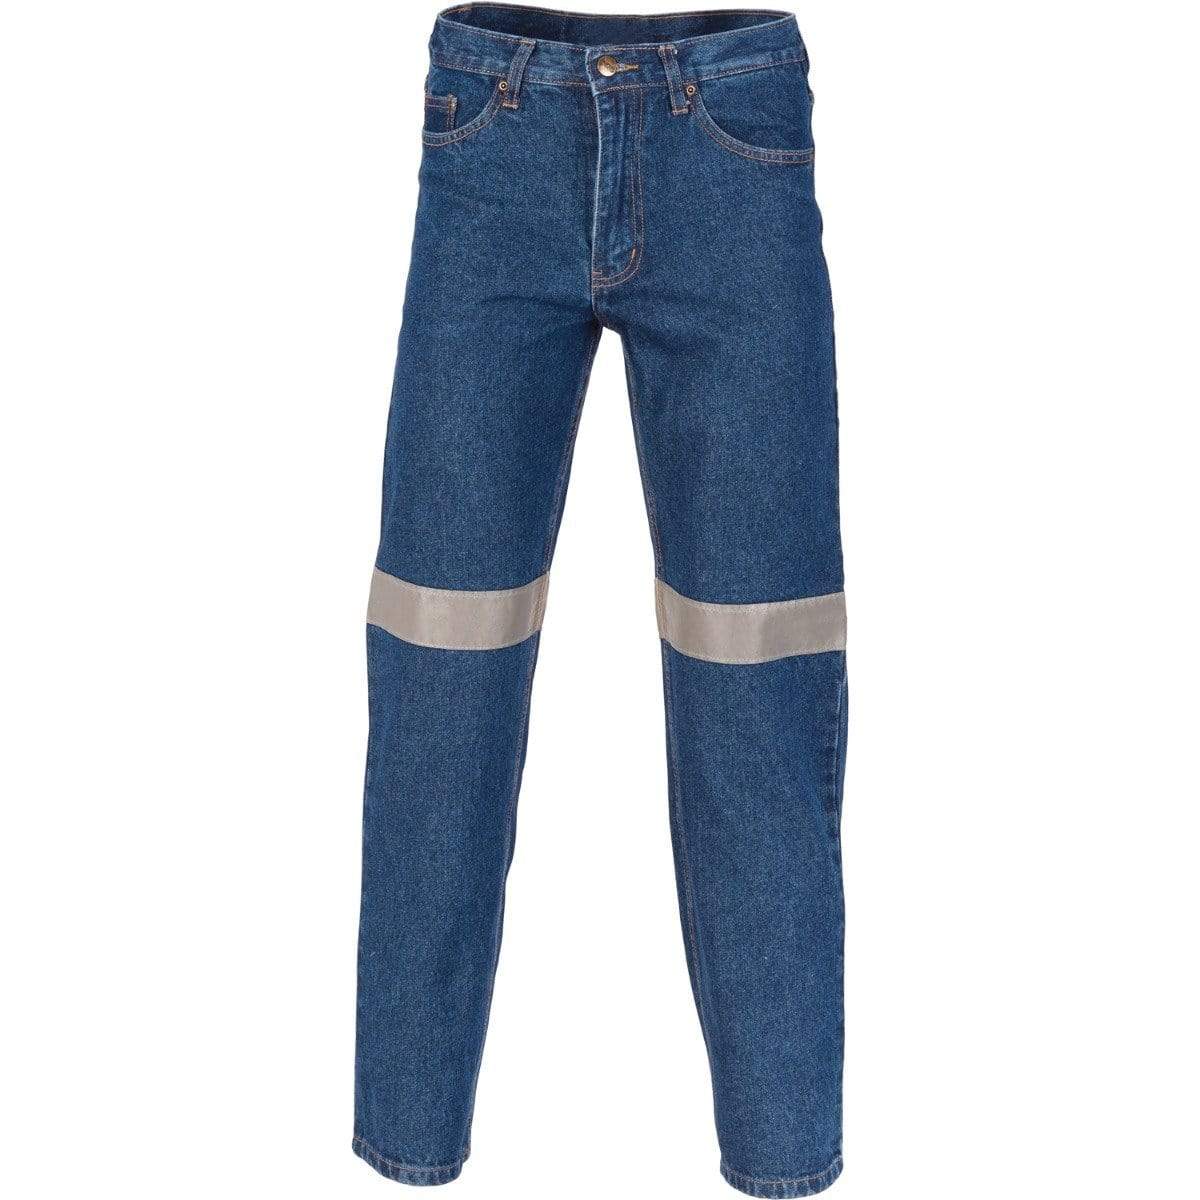 DNC Workwear Work Wear DNC WORKWEAR Taped Denim Stretch Jeans 3347